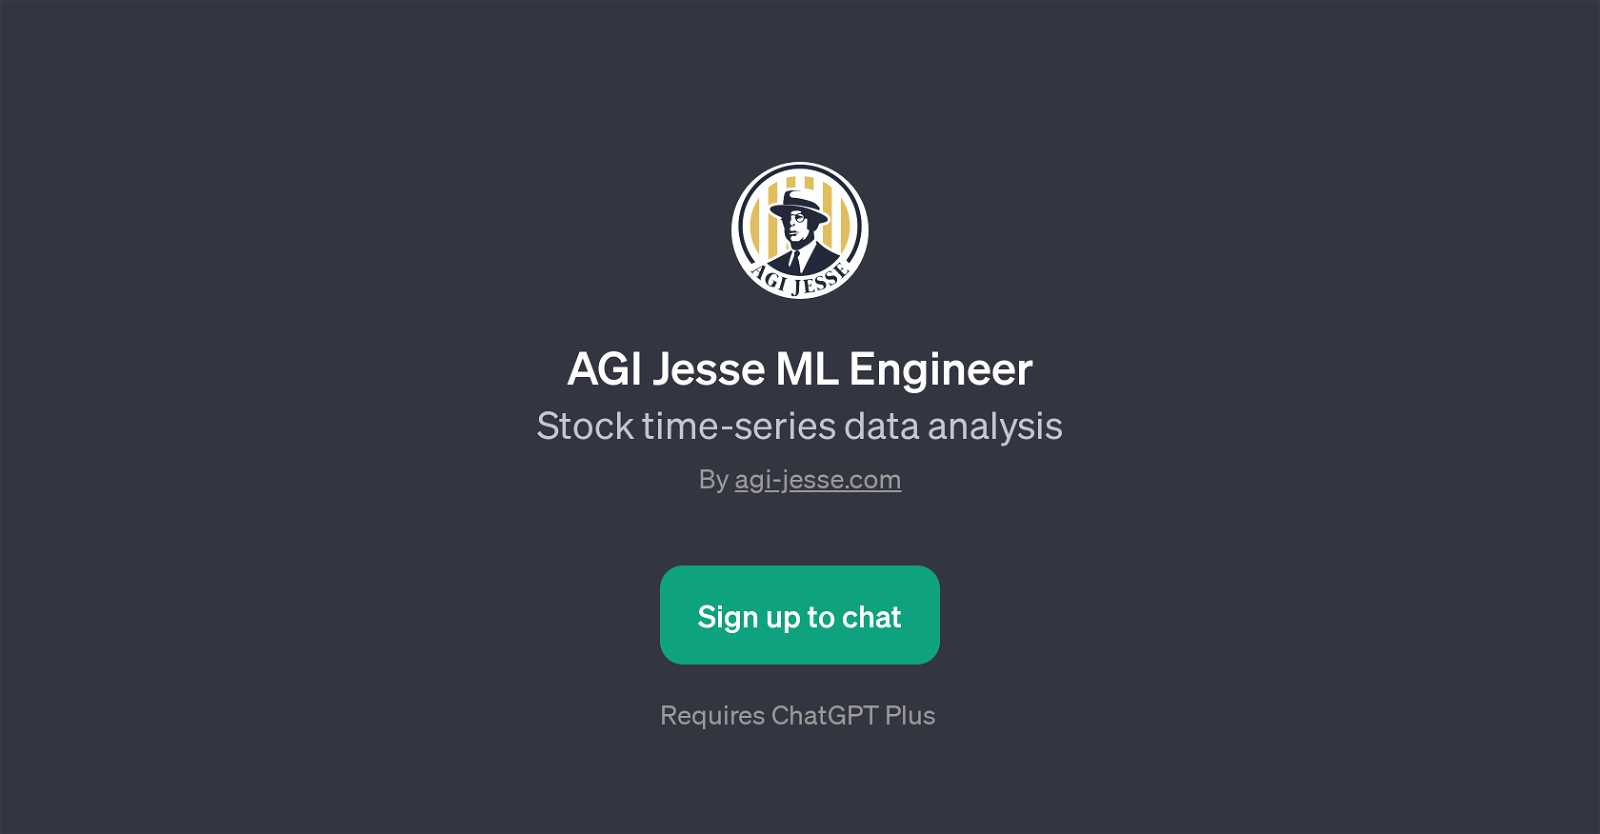 AGI Jesse ML Engineer website